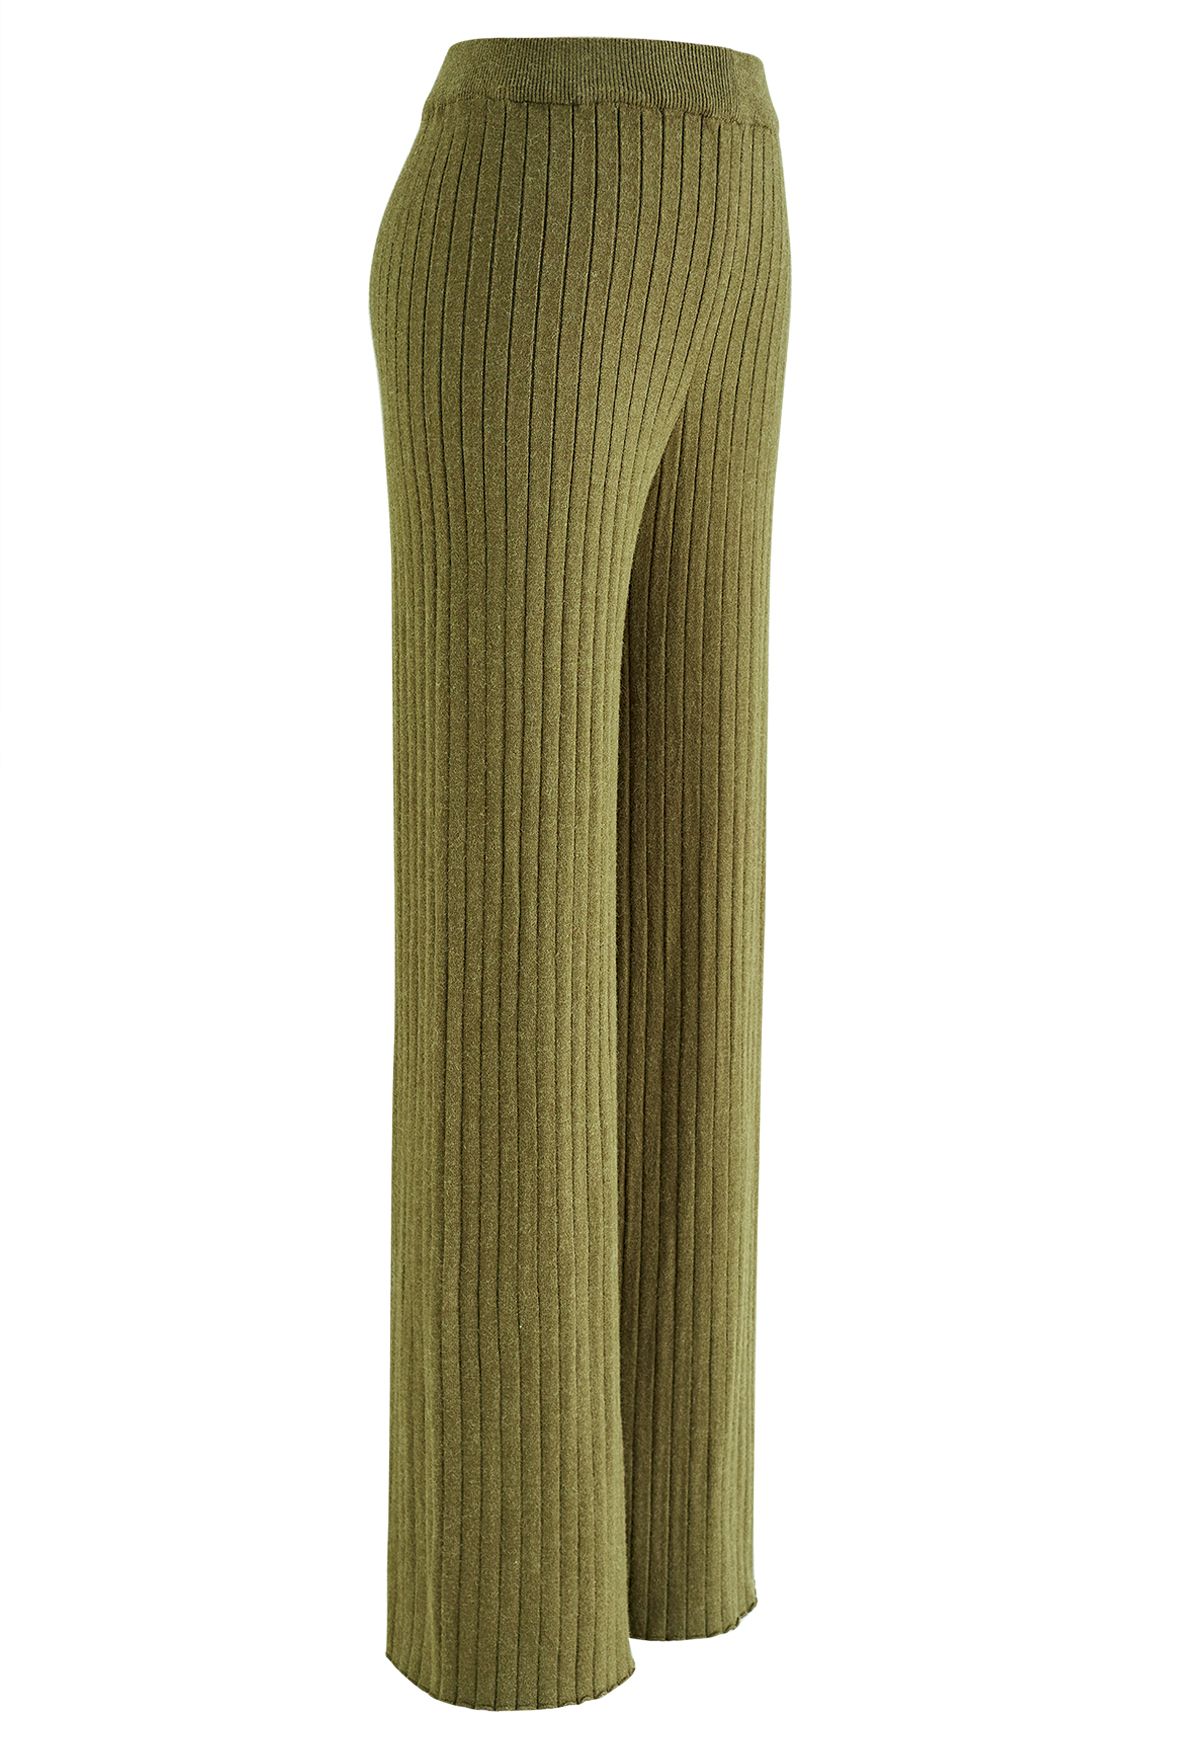 بنطلون منسوج بأرجل مستقيمة مخططة باللون الأخضر الطحلب